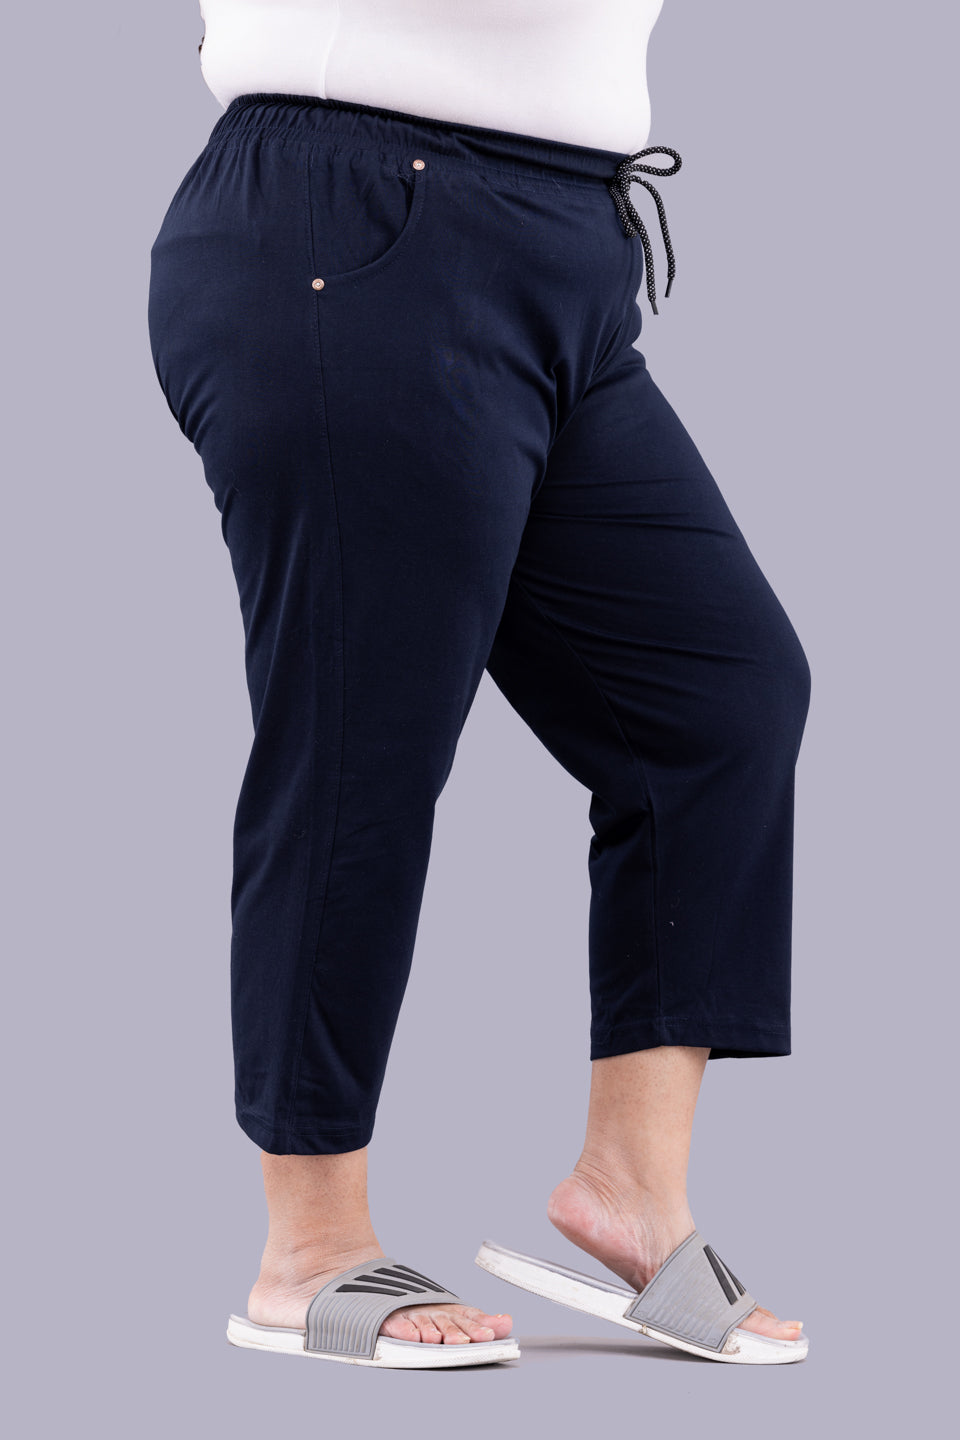 Cotton Capris For Women - Half Capri Pants - Navy Blue